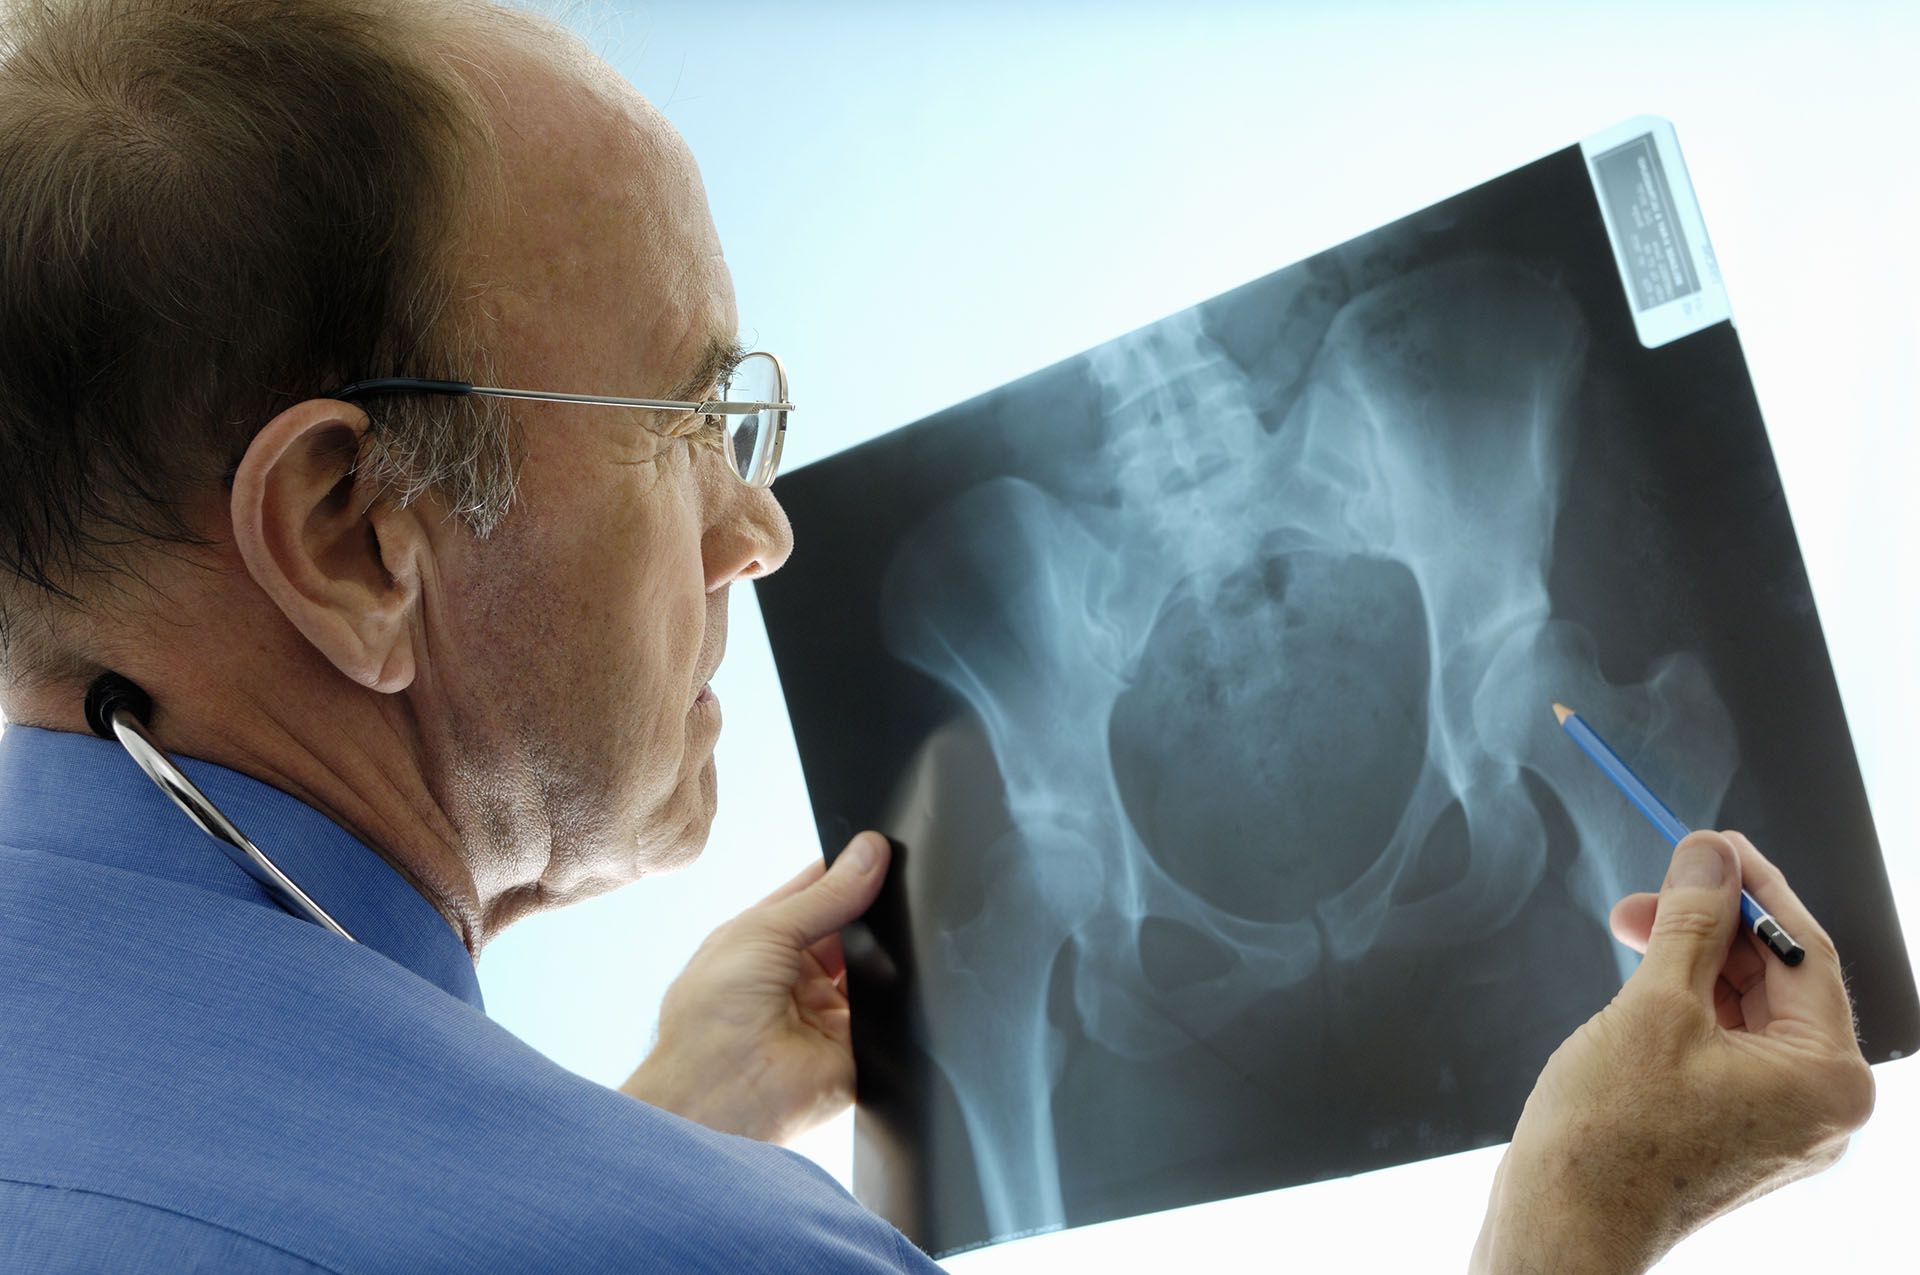 Las etapas iniciales de la disminución de la masa ósea no presentan síntomas
(Getty Images)